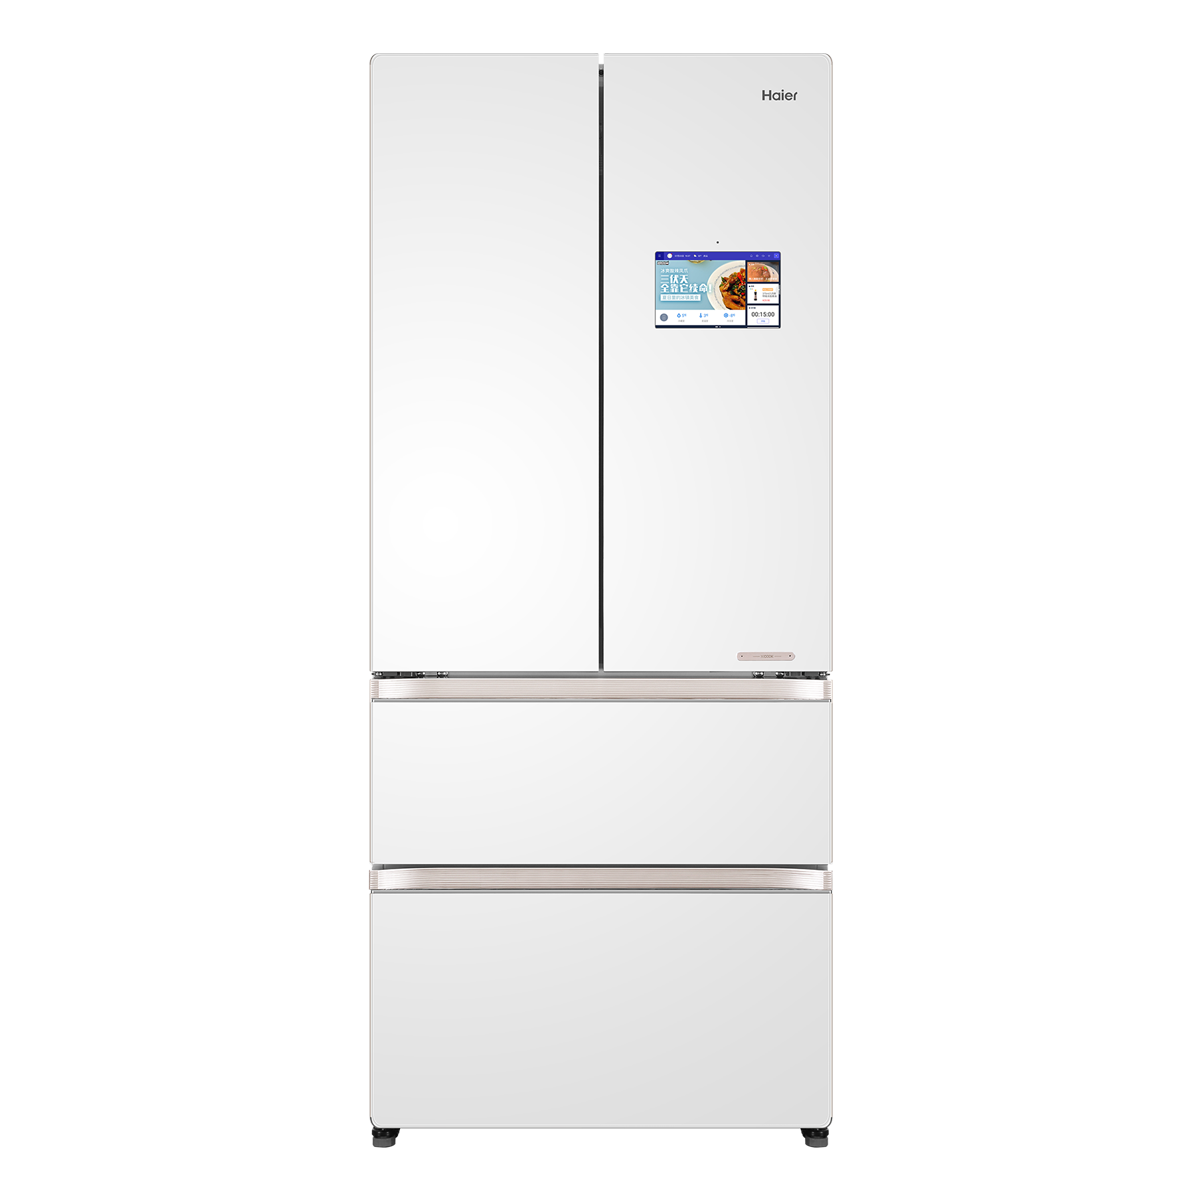 海尔Haier冰箱 BCD-509WDIFU1 说明书